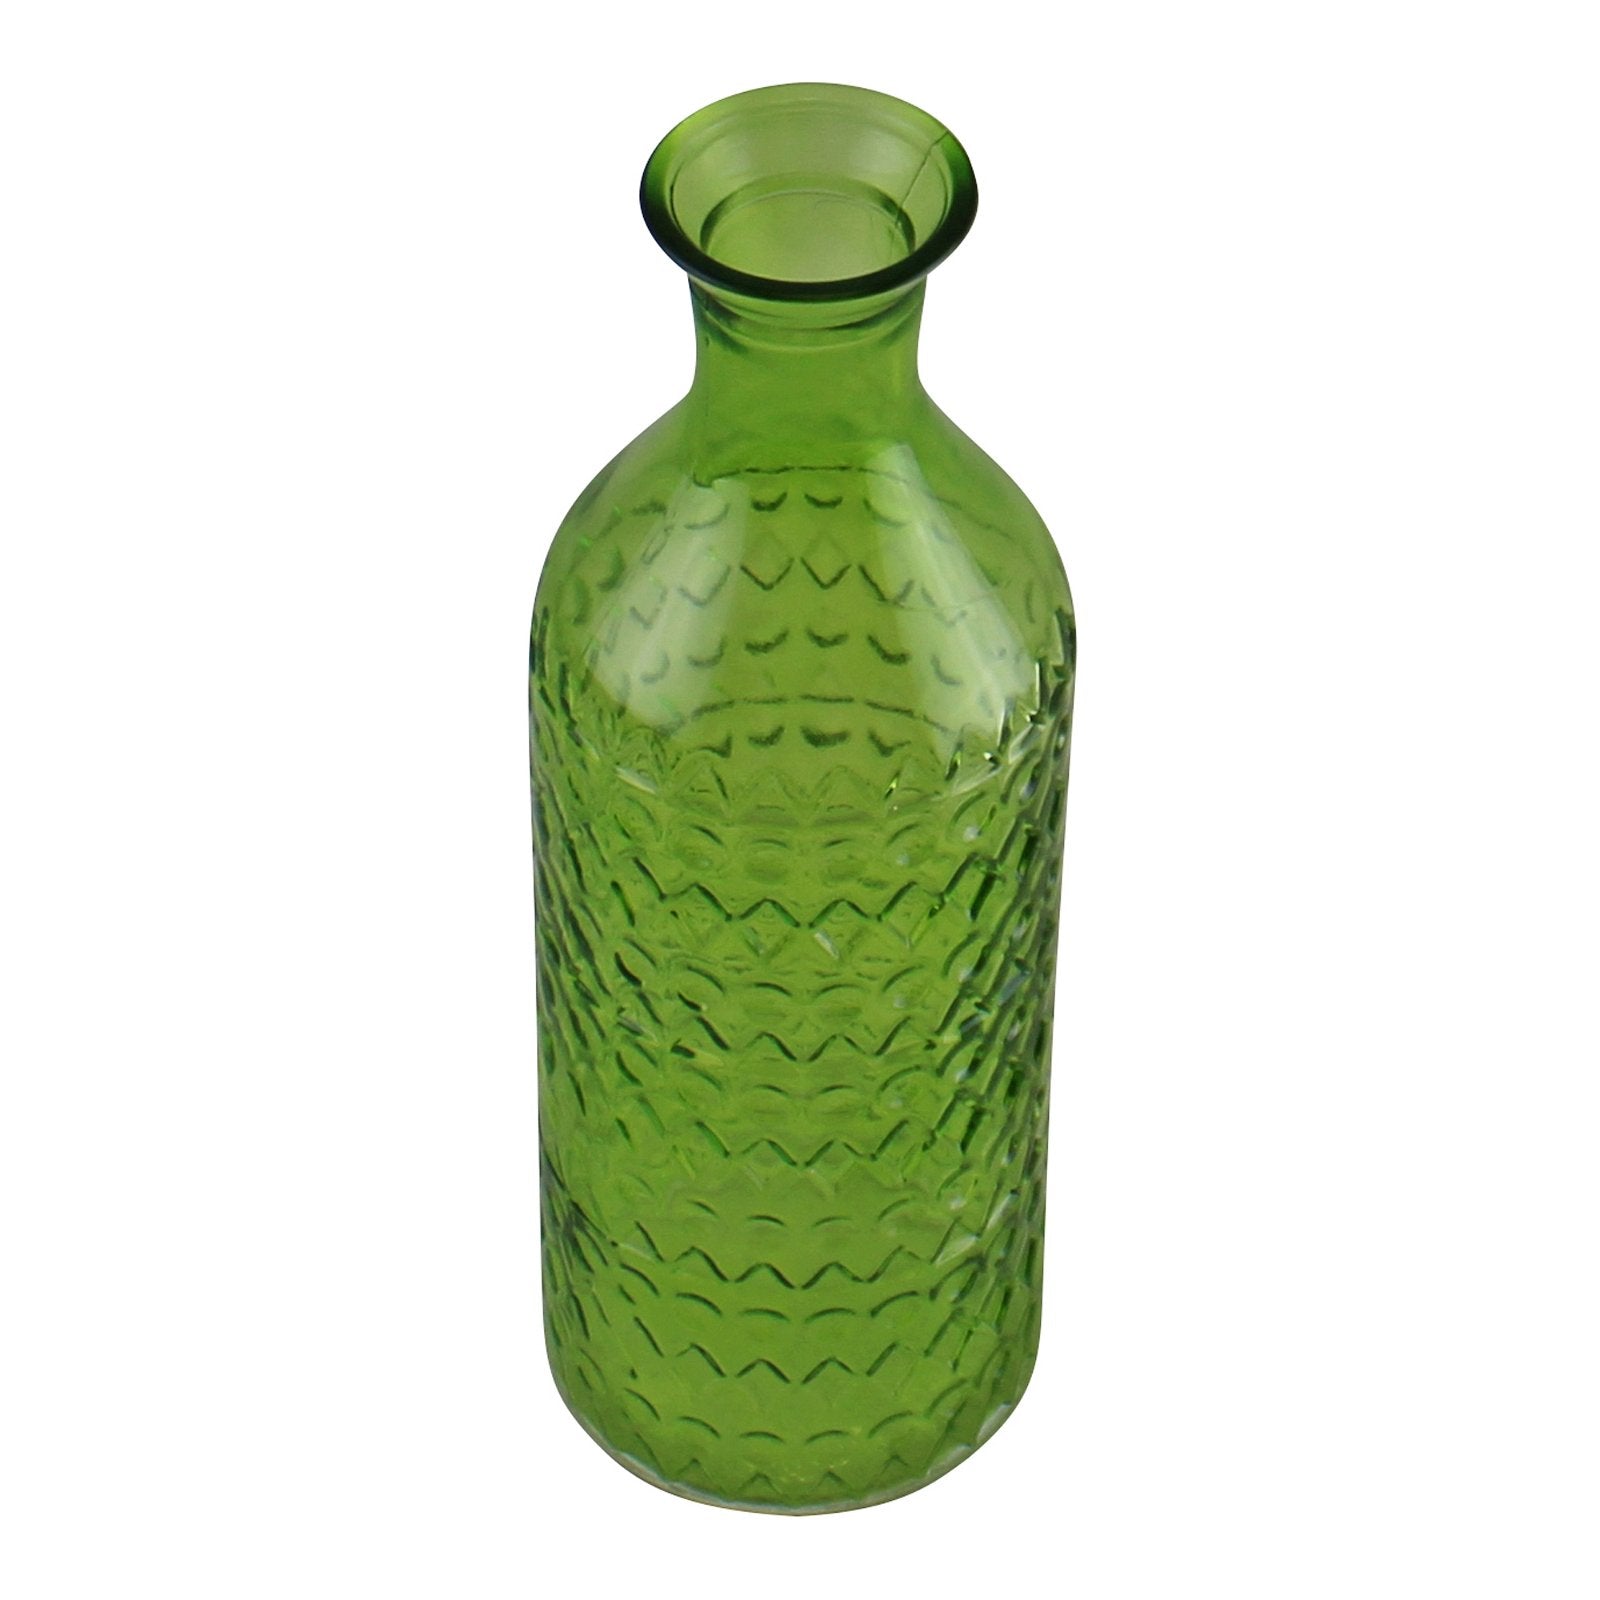 Small Geometric Embossed Glass Bottle Style Vase, Light Green